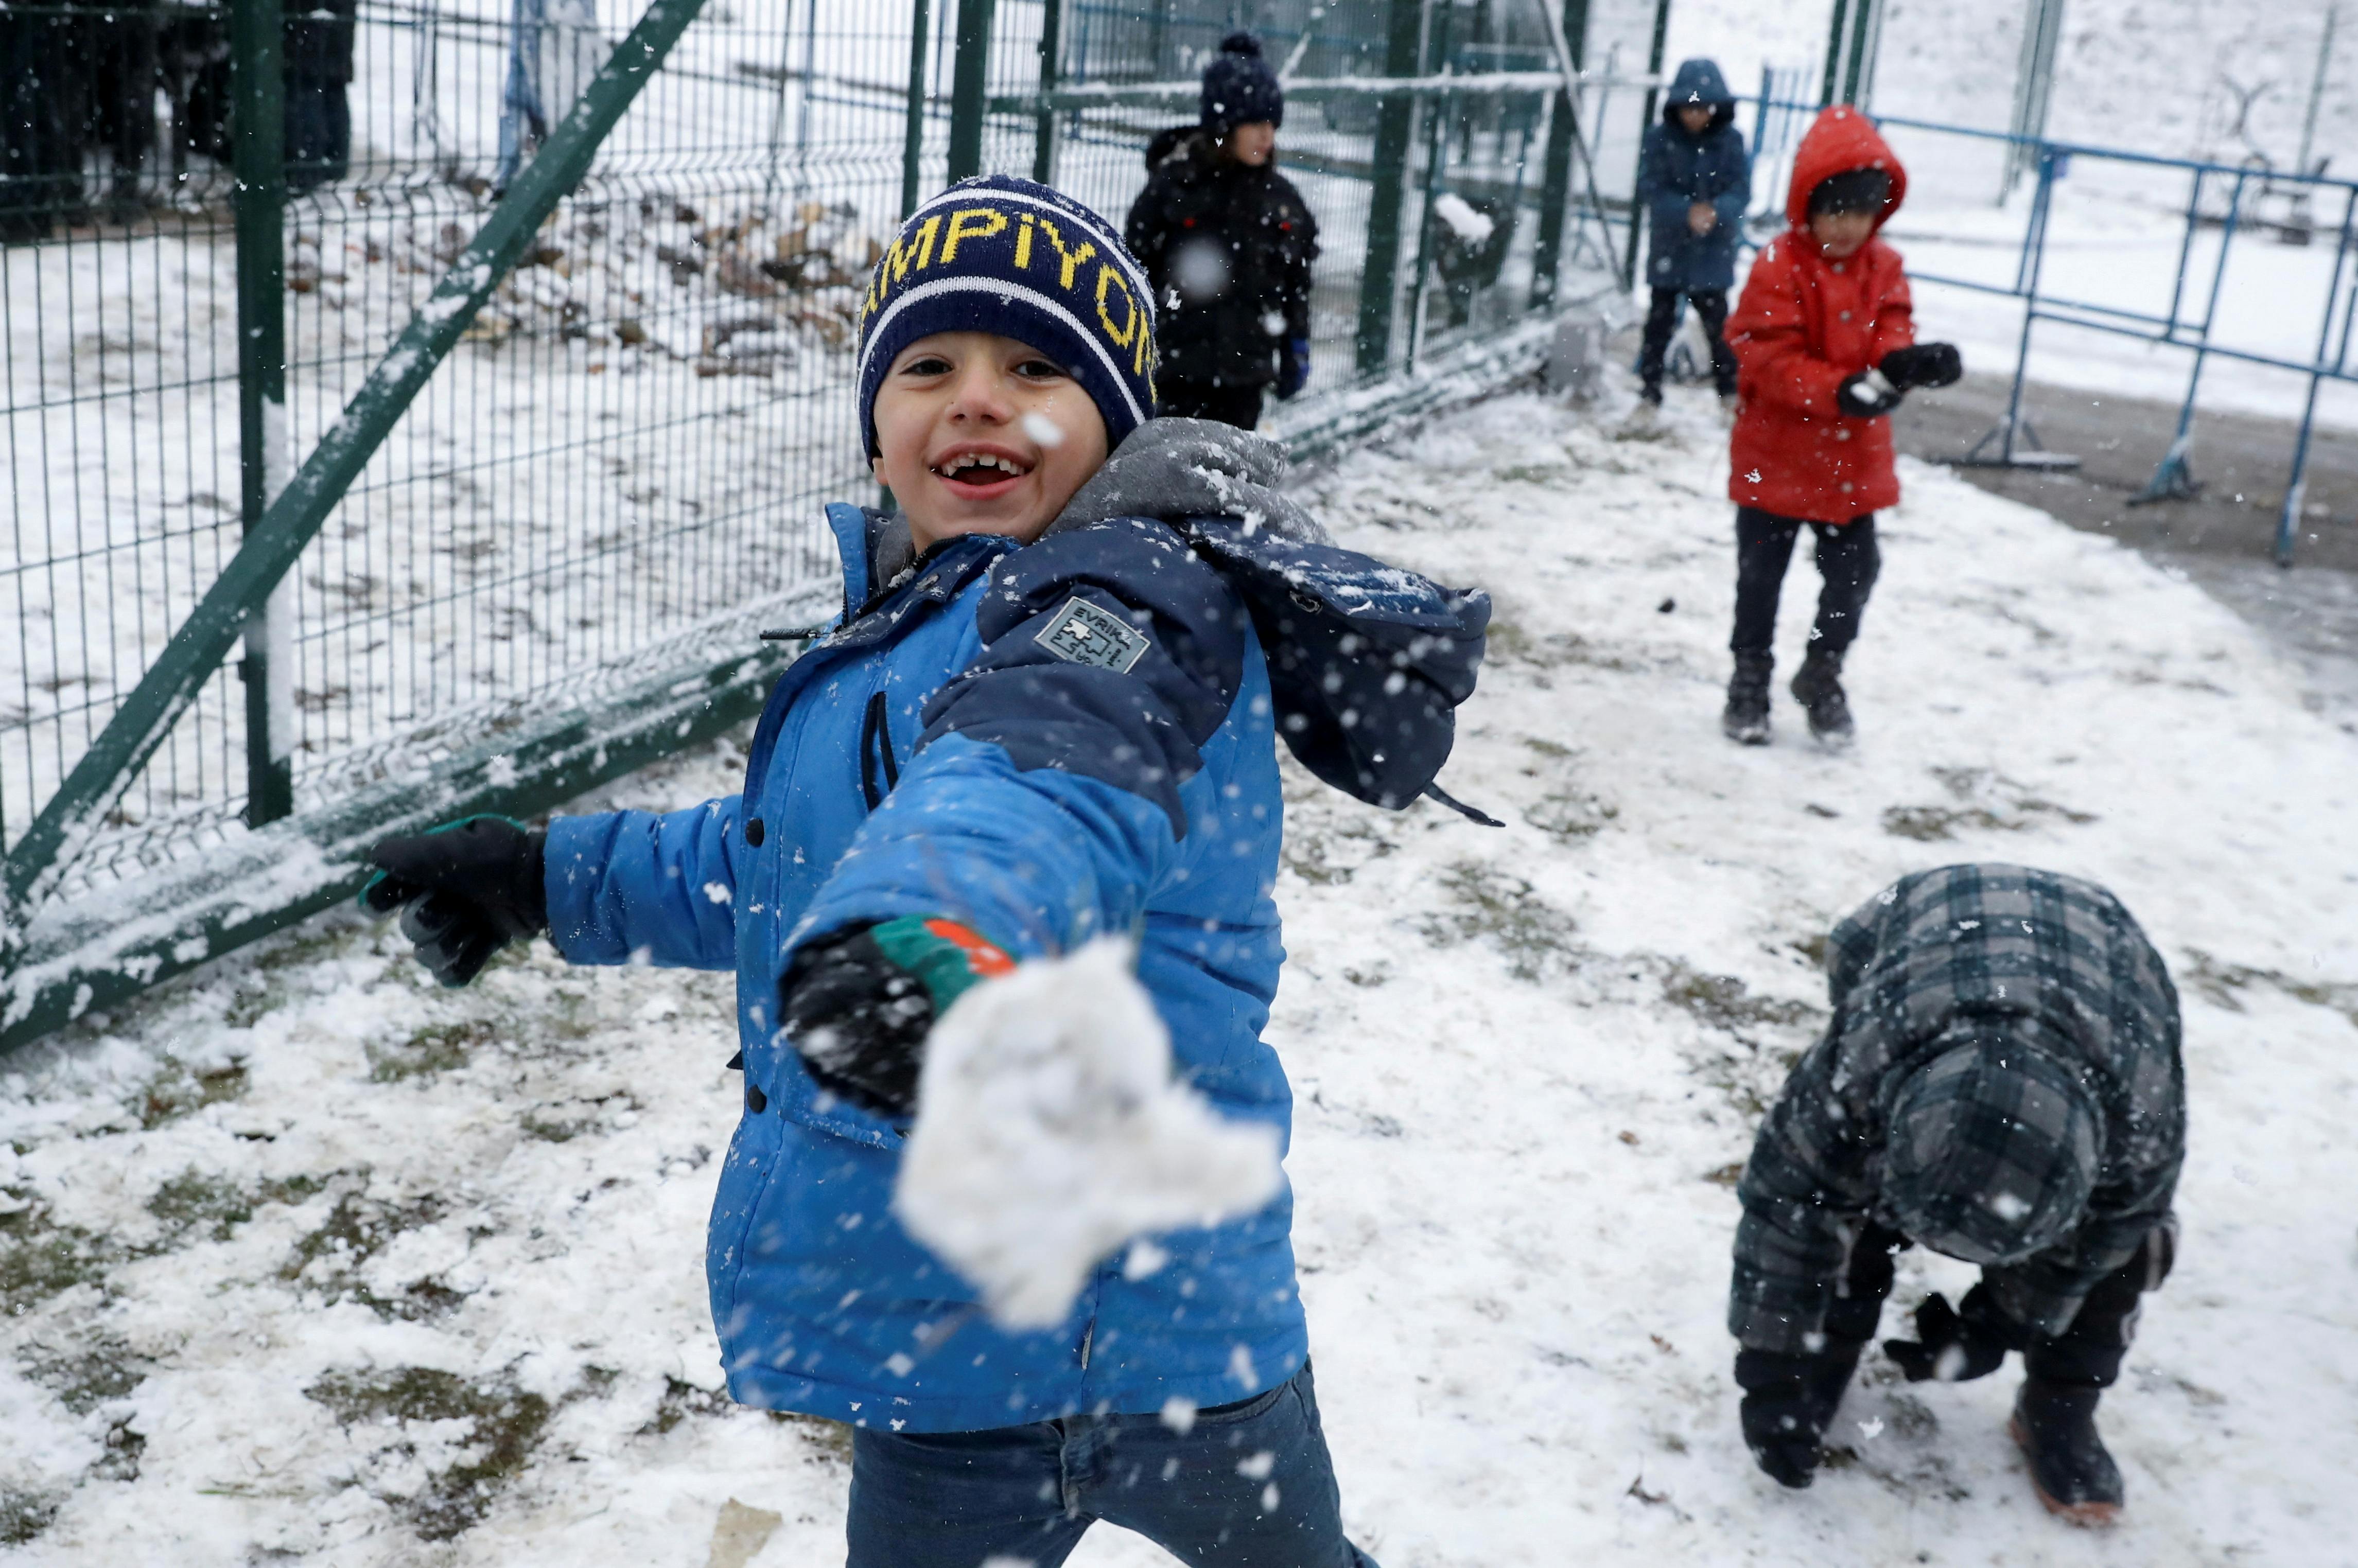 Des enfants migrants jouent dans la neige dans un centre de transport et de logistique près de la frontière biélorusse-polonaise, dans la région de Grodno, en Biélorussie, le 23 novembre 2021. REUTERS/Kacper Pempel 